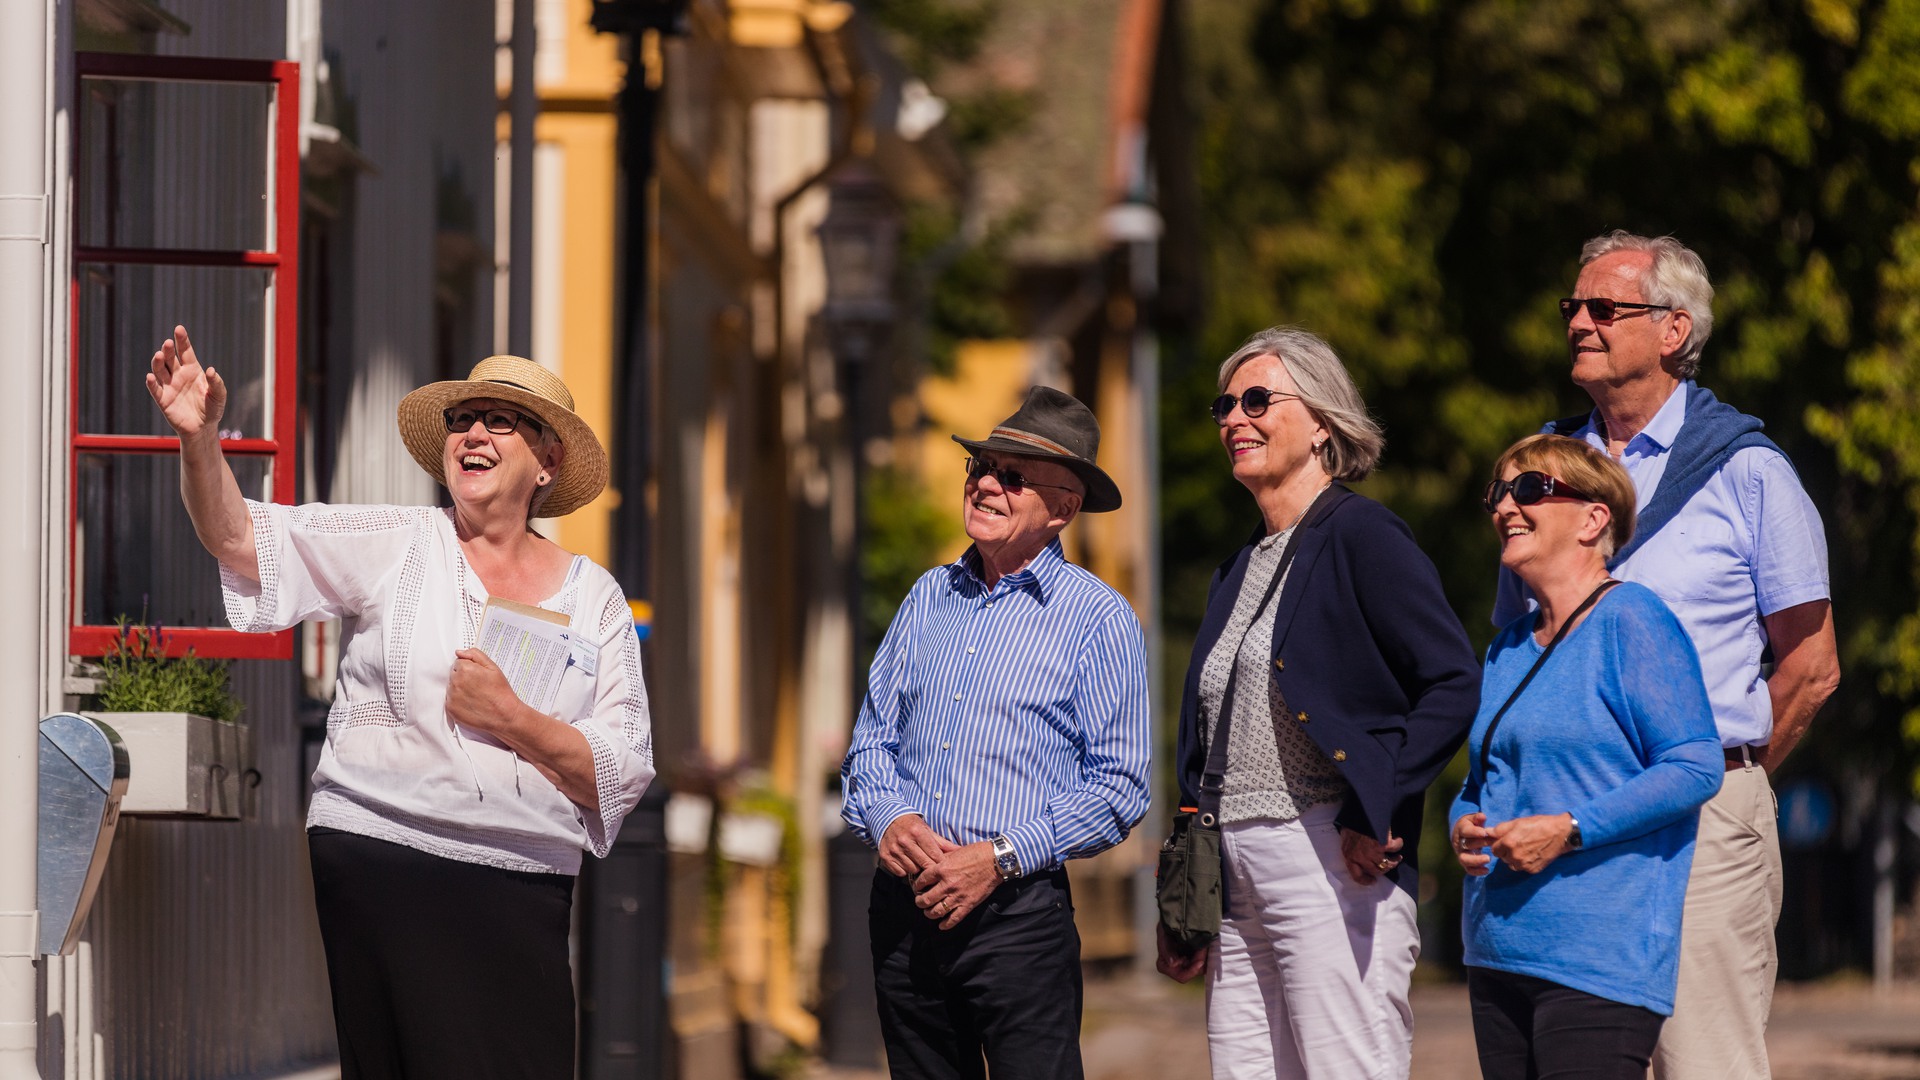 En guide visar fyra turister en av villorna i stadsparken.